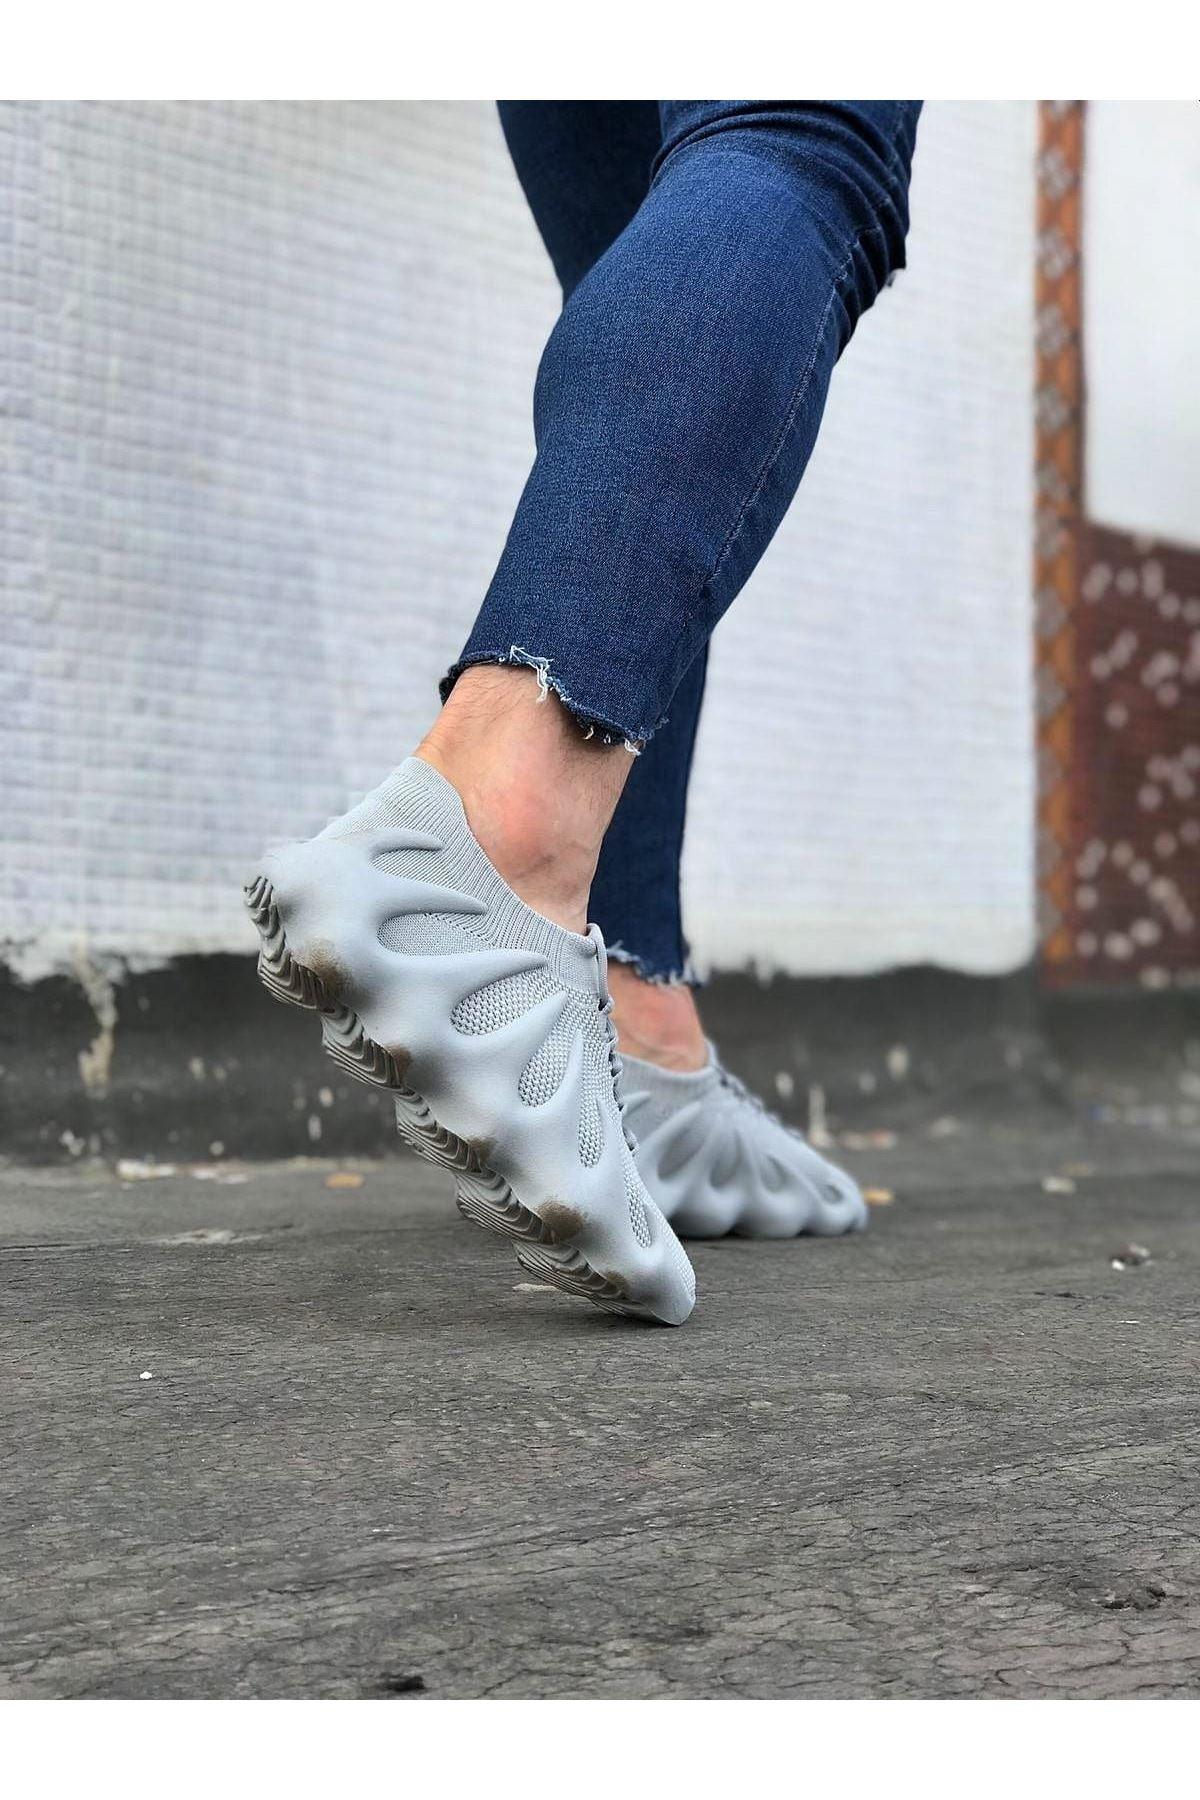 WG300 Gray Knitwear Wrap Sole Casual Men's Shoes - STREET MODE ™